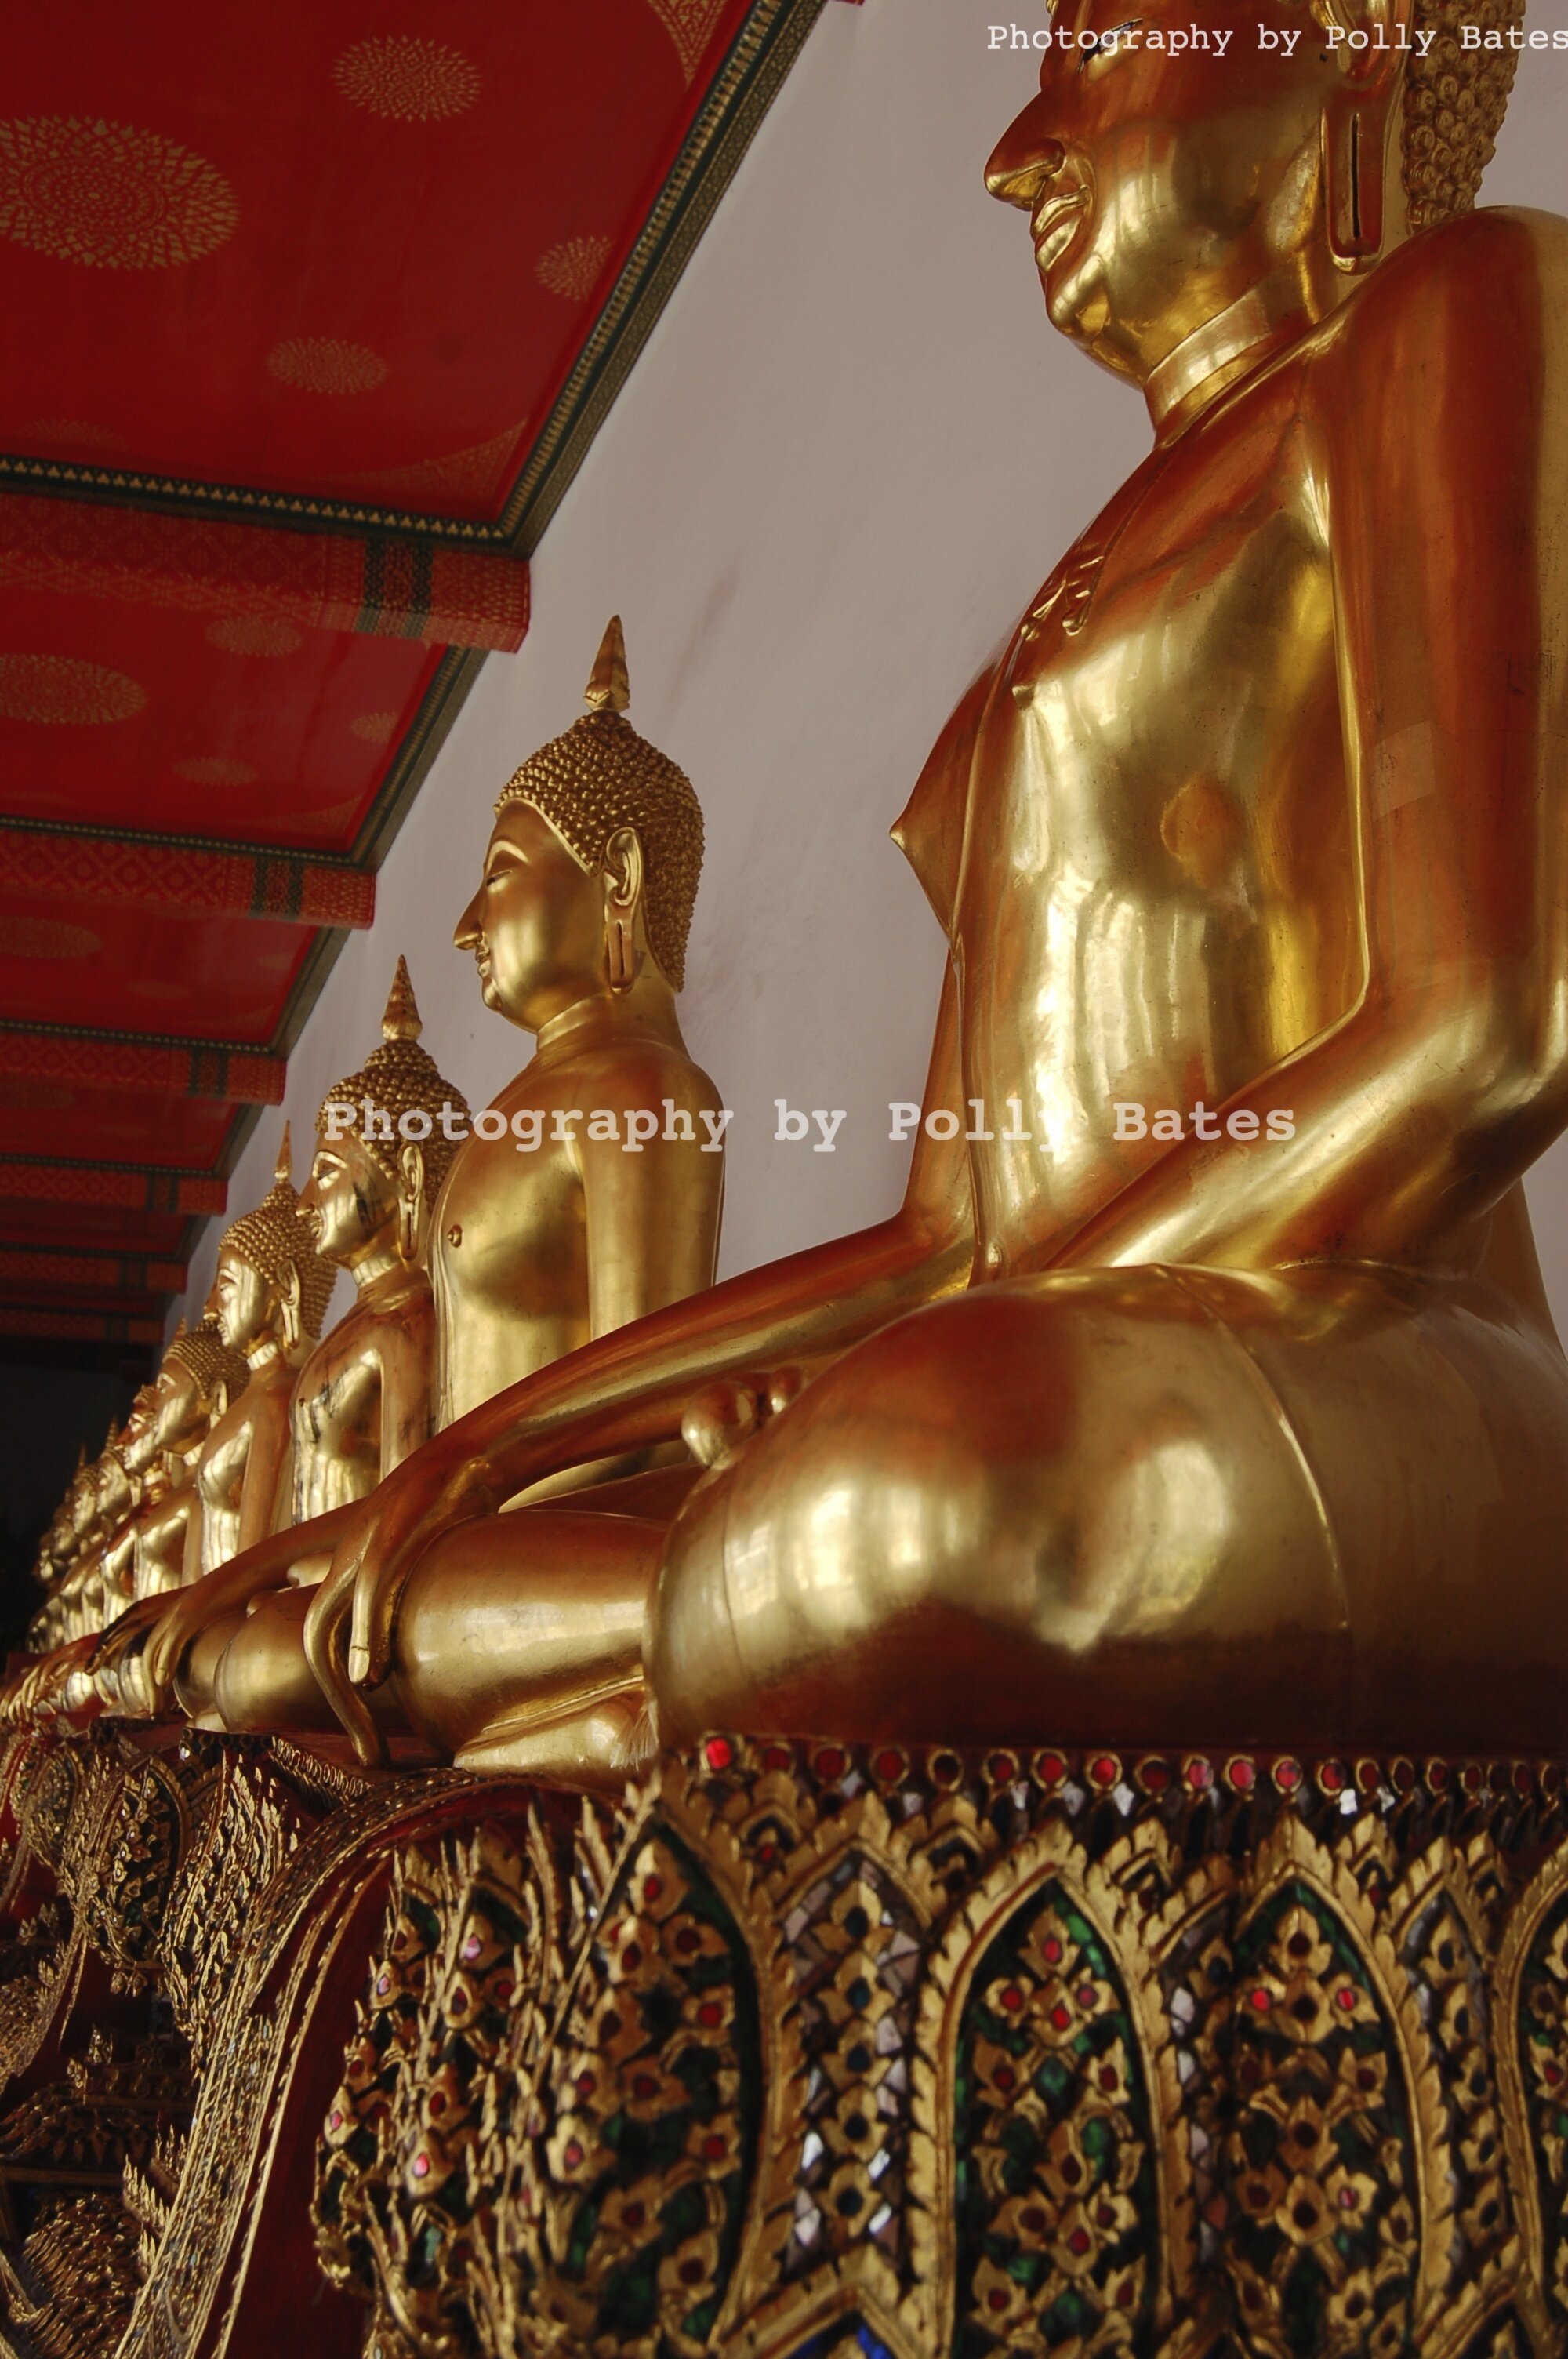 Polly Bates Thailand Temple Photography 6.jpg